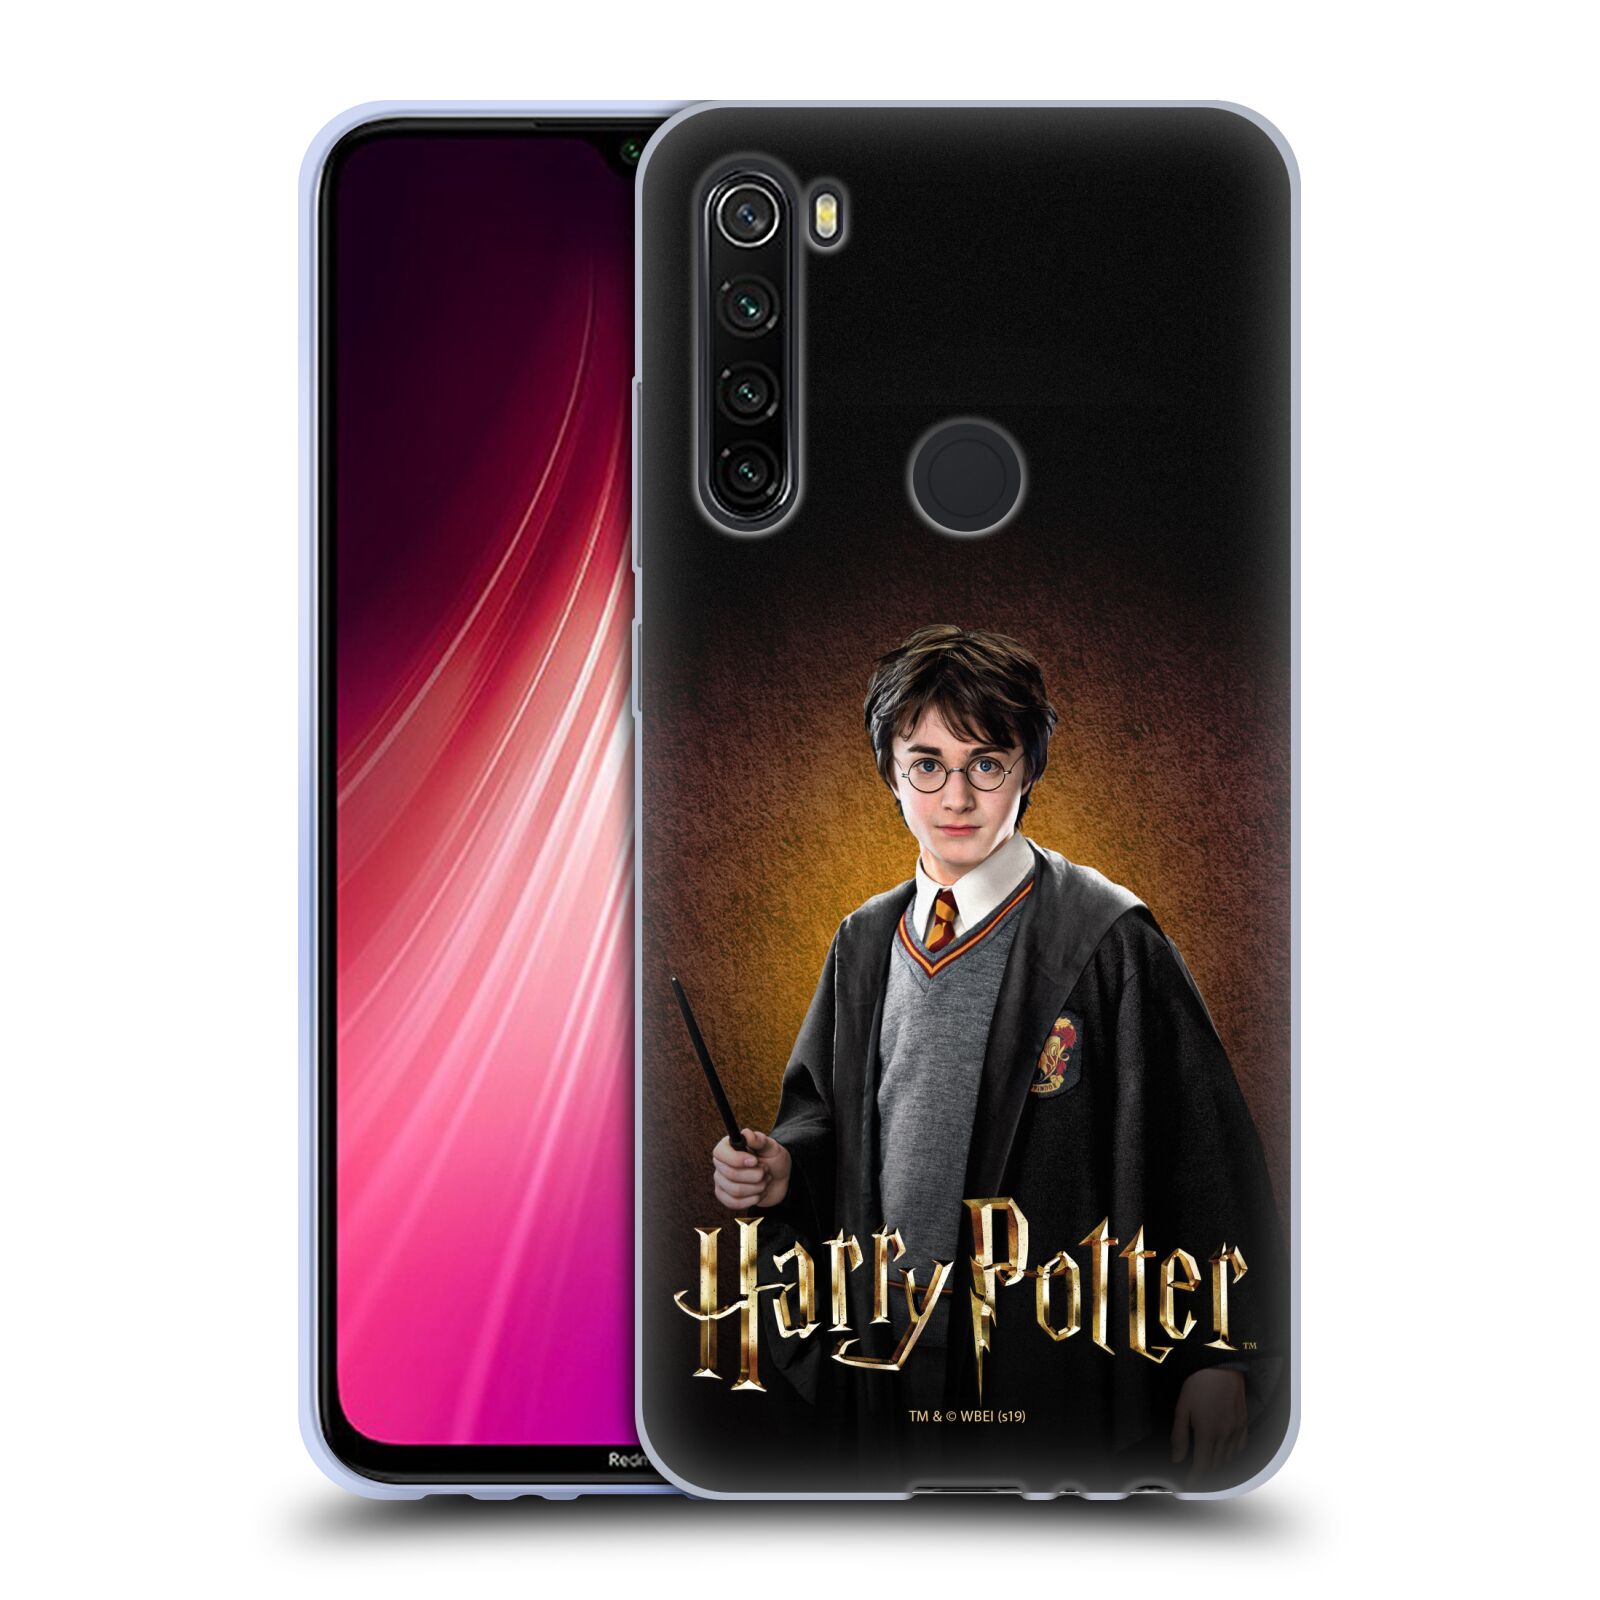 Silikonové pouzdro na mobil Xiaomi Redmi Note 8T - Harry Potter - Malý Harry Potter (Silikonový kryt, obal, pouzdro na mobilní telefon Xiaomi Redmi Note 8T Dual SIM s licencovaným motivem Harry Potter - Malý Harry Potter)